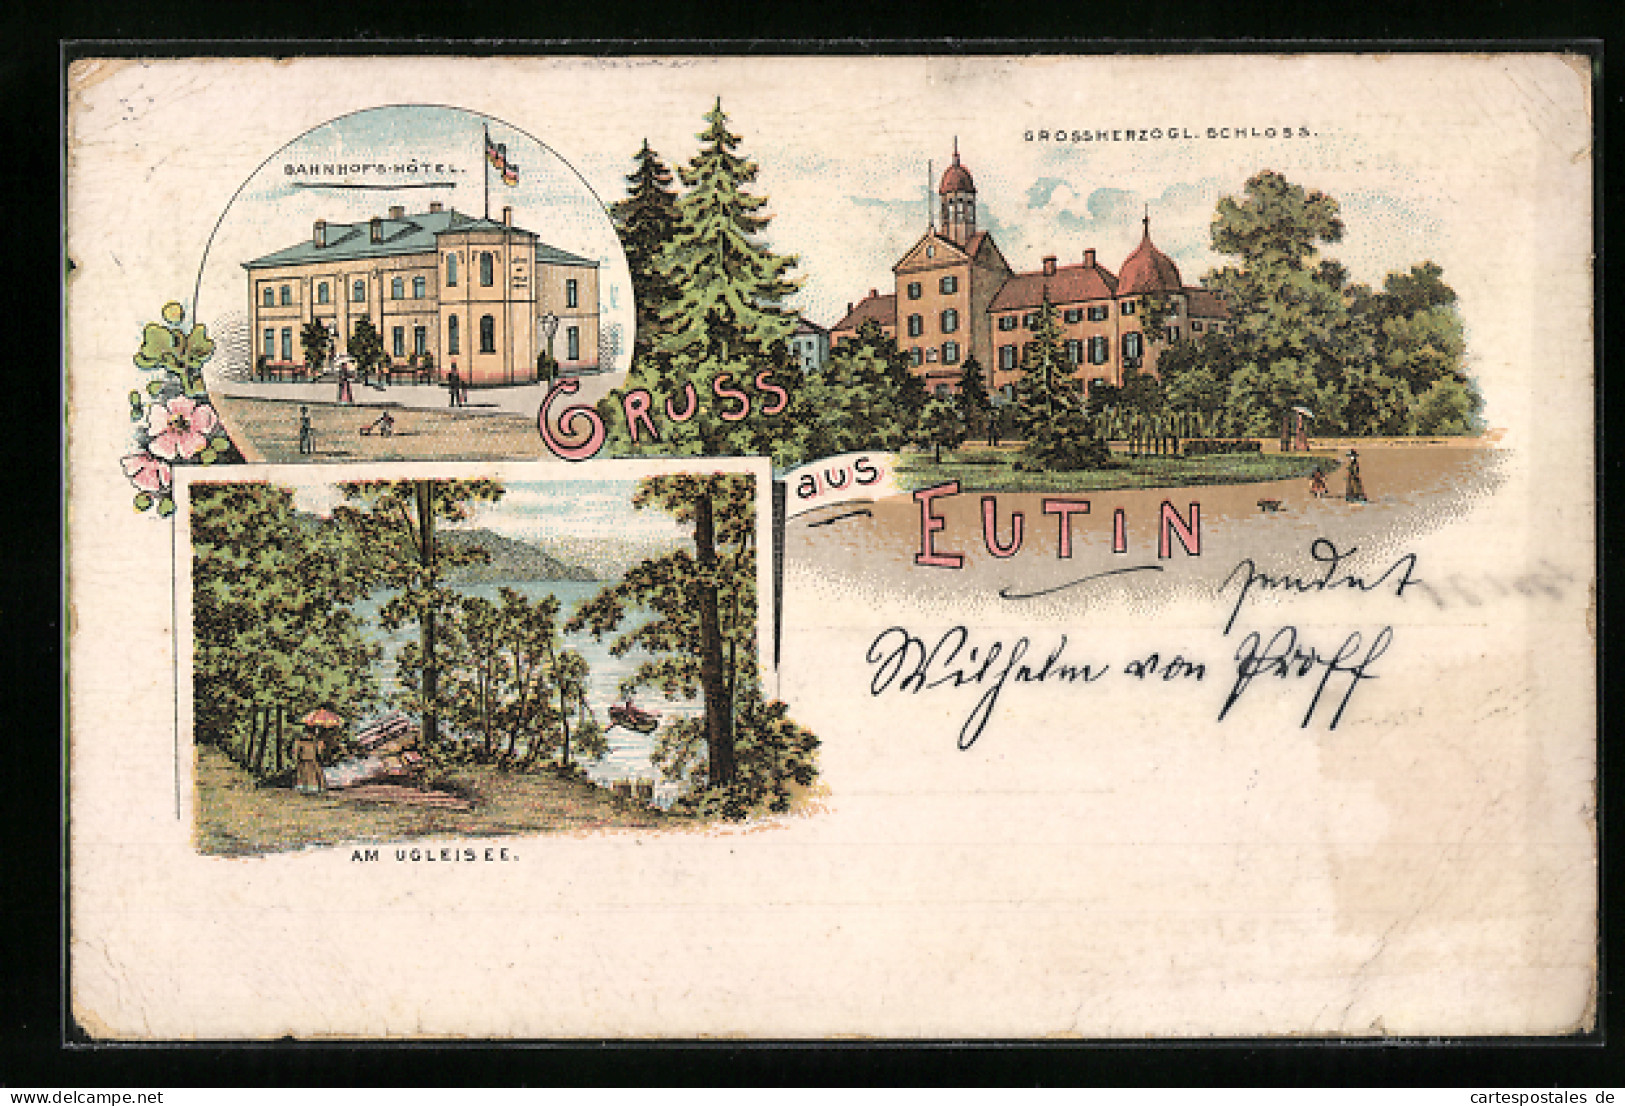 Lithographie Eutin, Bahnhofs-Hotel, Am Ugleisee, Grossherzogl. Schloss  - Eutin